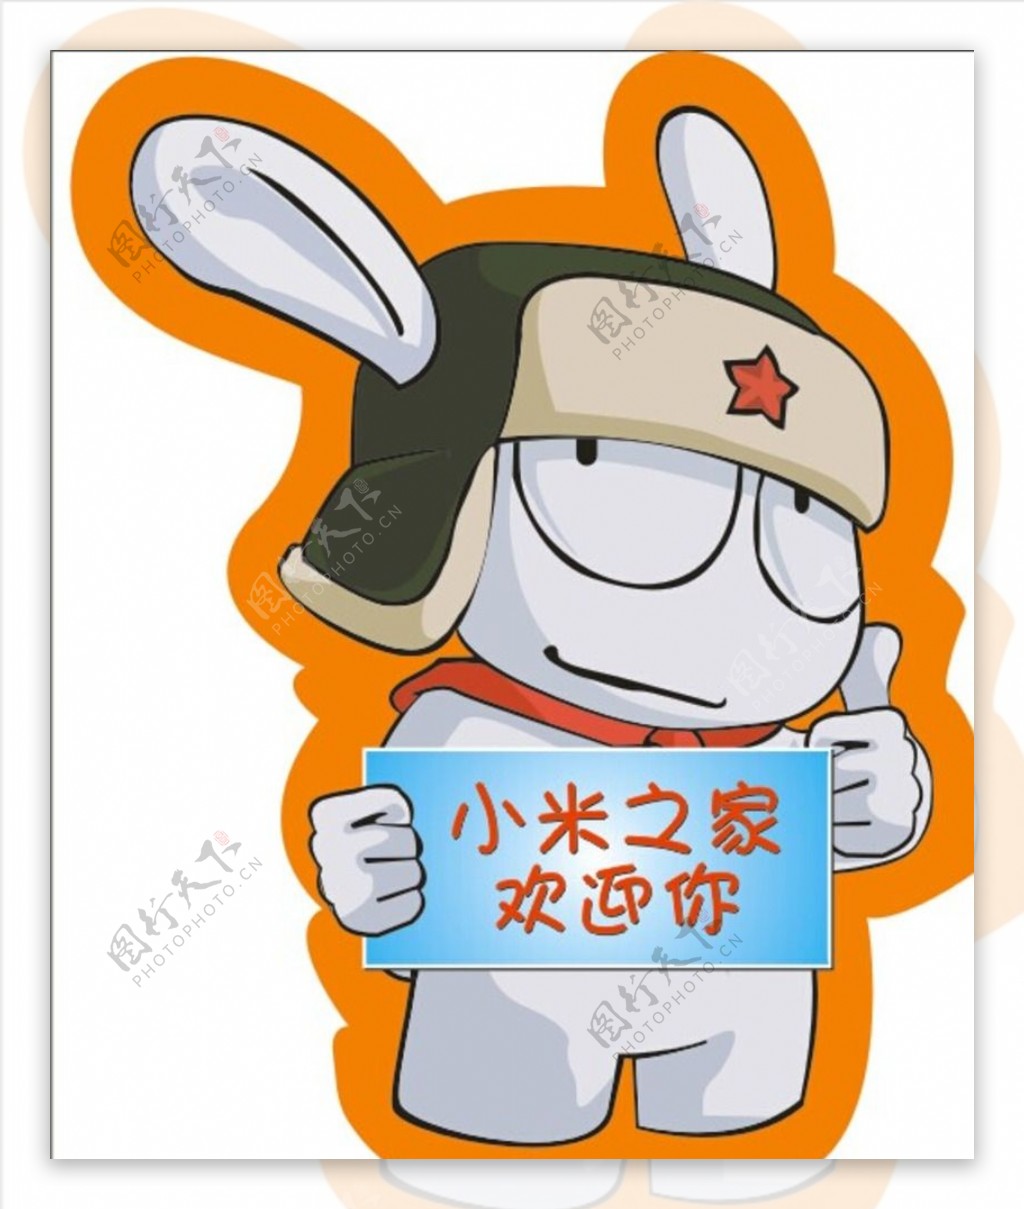 【米兔成员】米“本”兔【百日挑战22】-绝区零社区-米游社